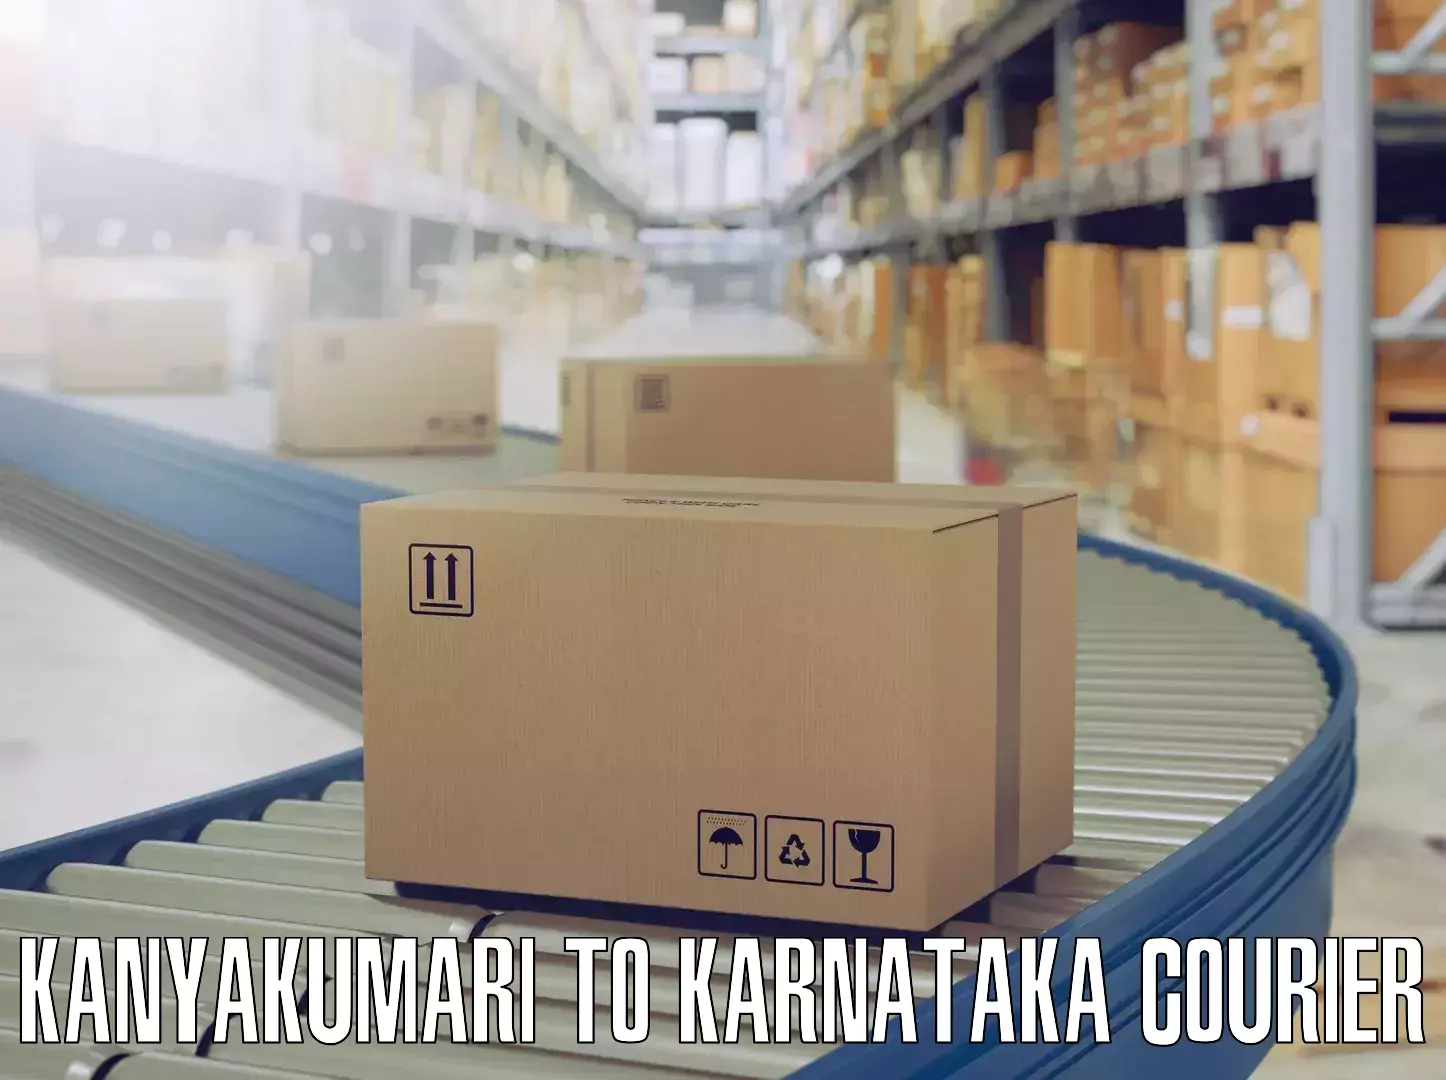 Nationwide household movers Kanyakumari to IIIT Raichur